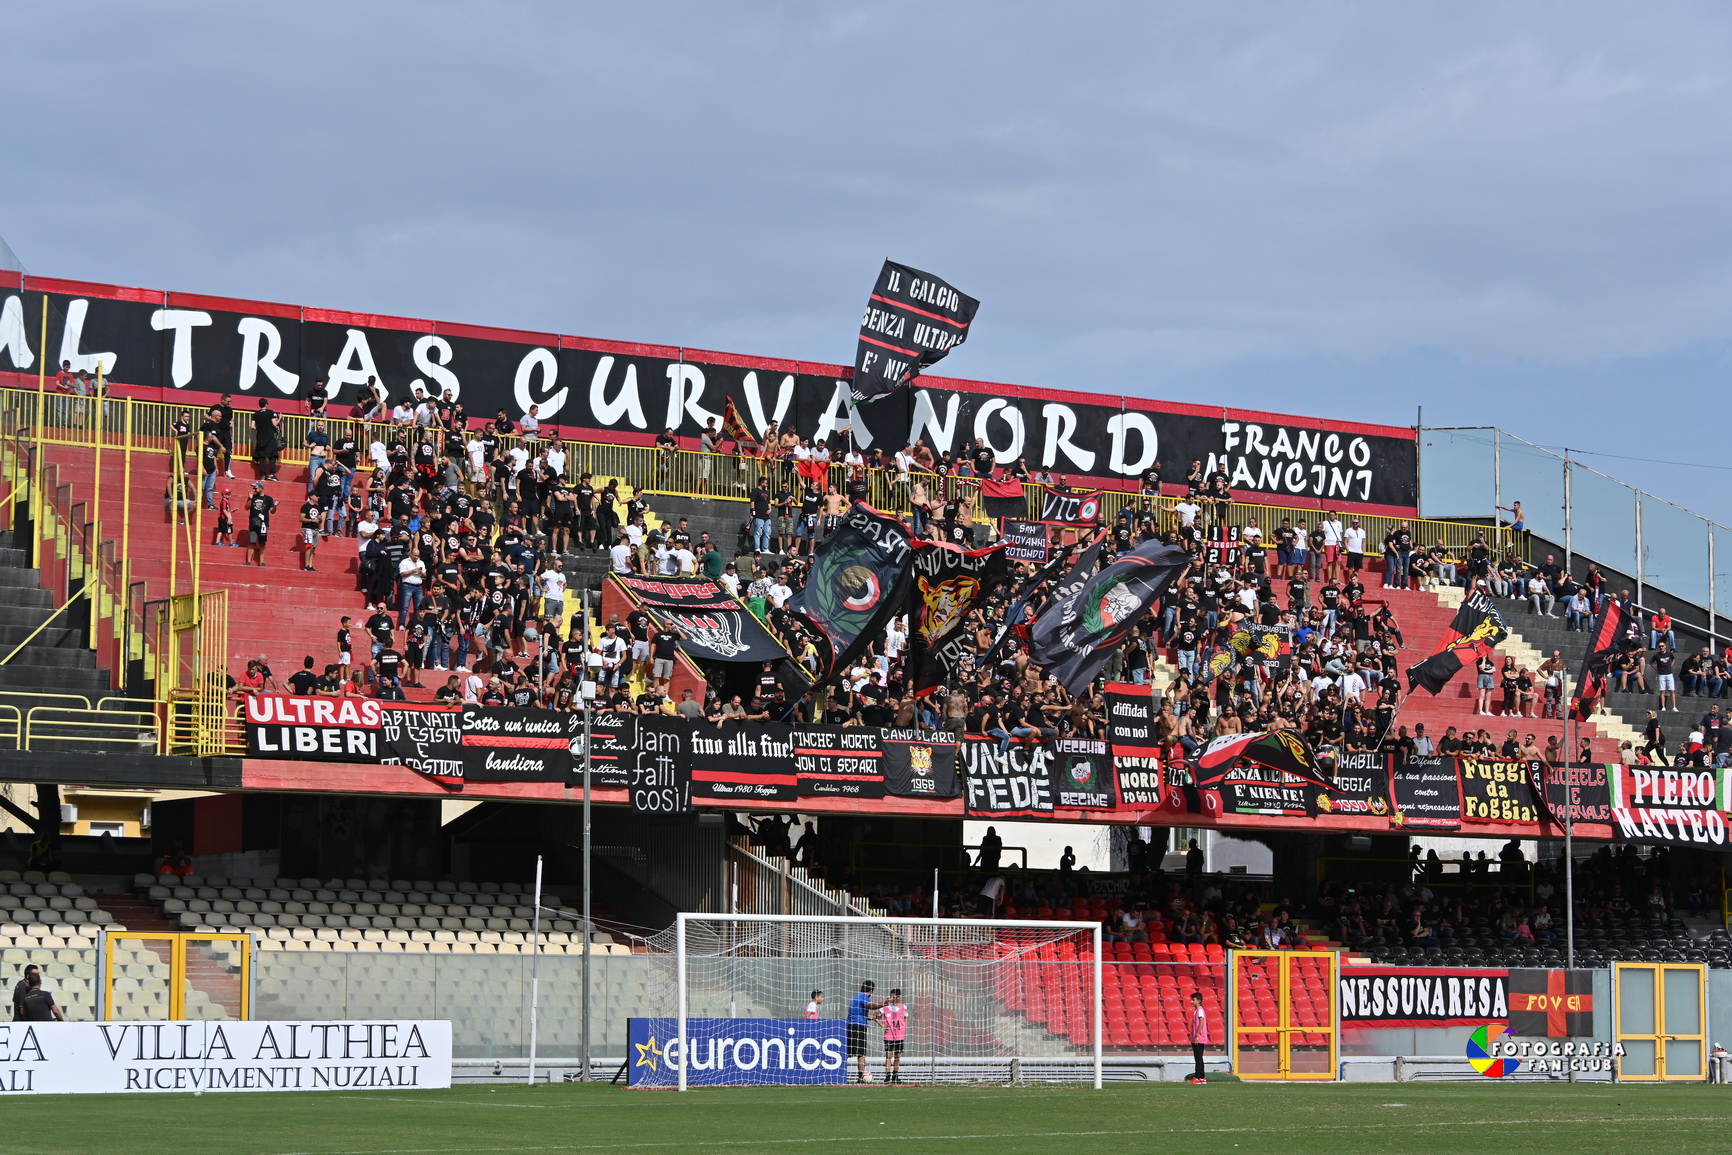 La Curva Nord Foggia emette un comunicato: ‘Siamo pronti a…’ in vista dei Playoff”.